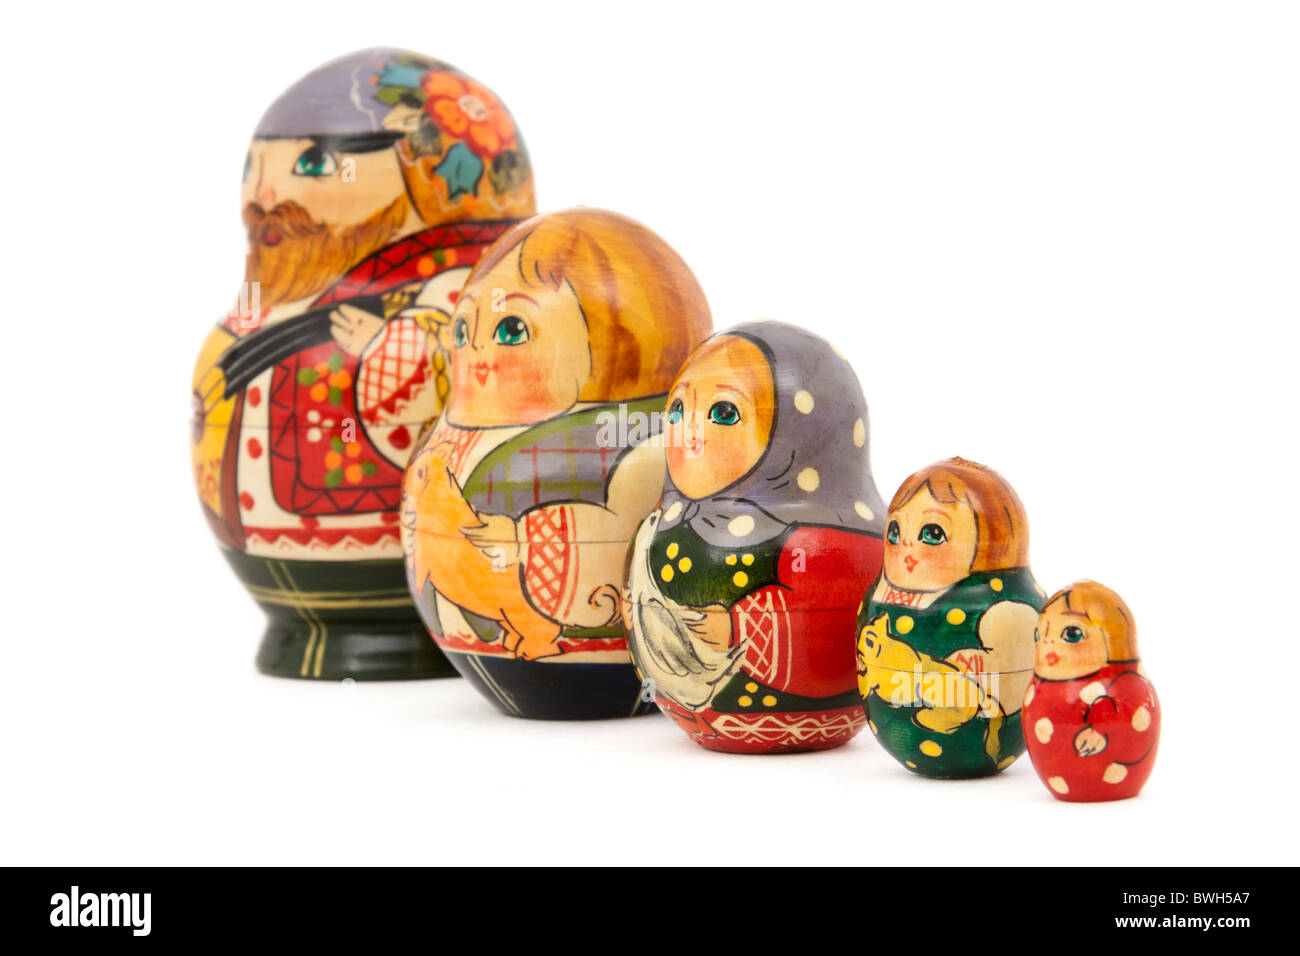 Row of traditional nested Russian Matryoshka dolls Stock Photo